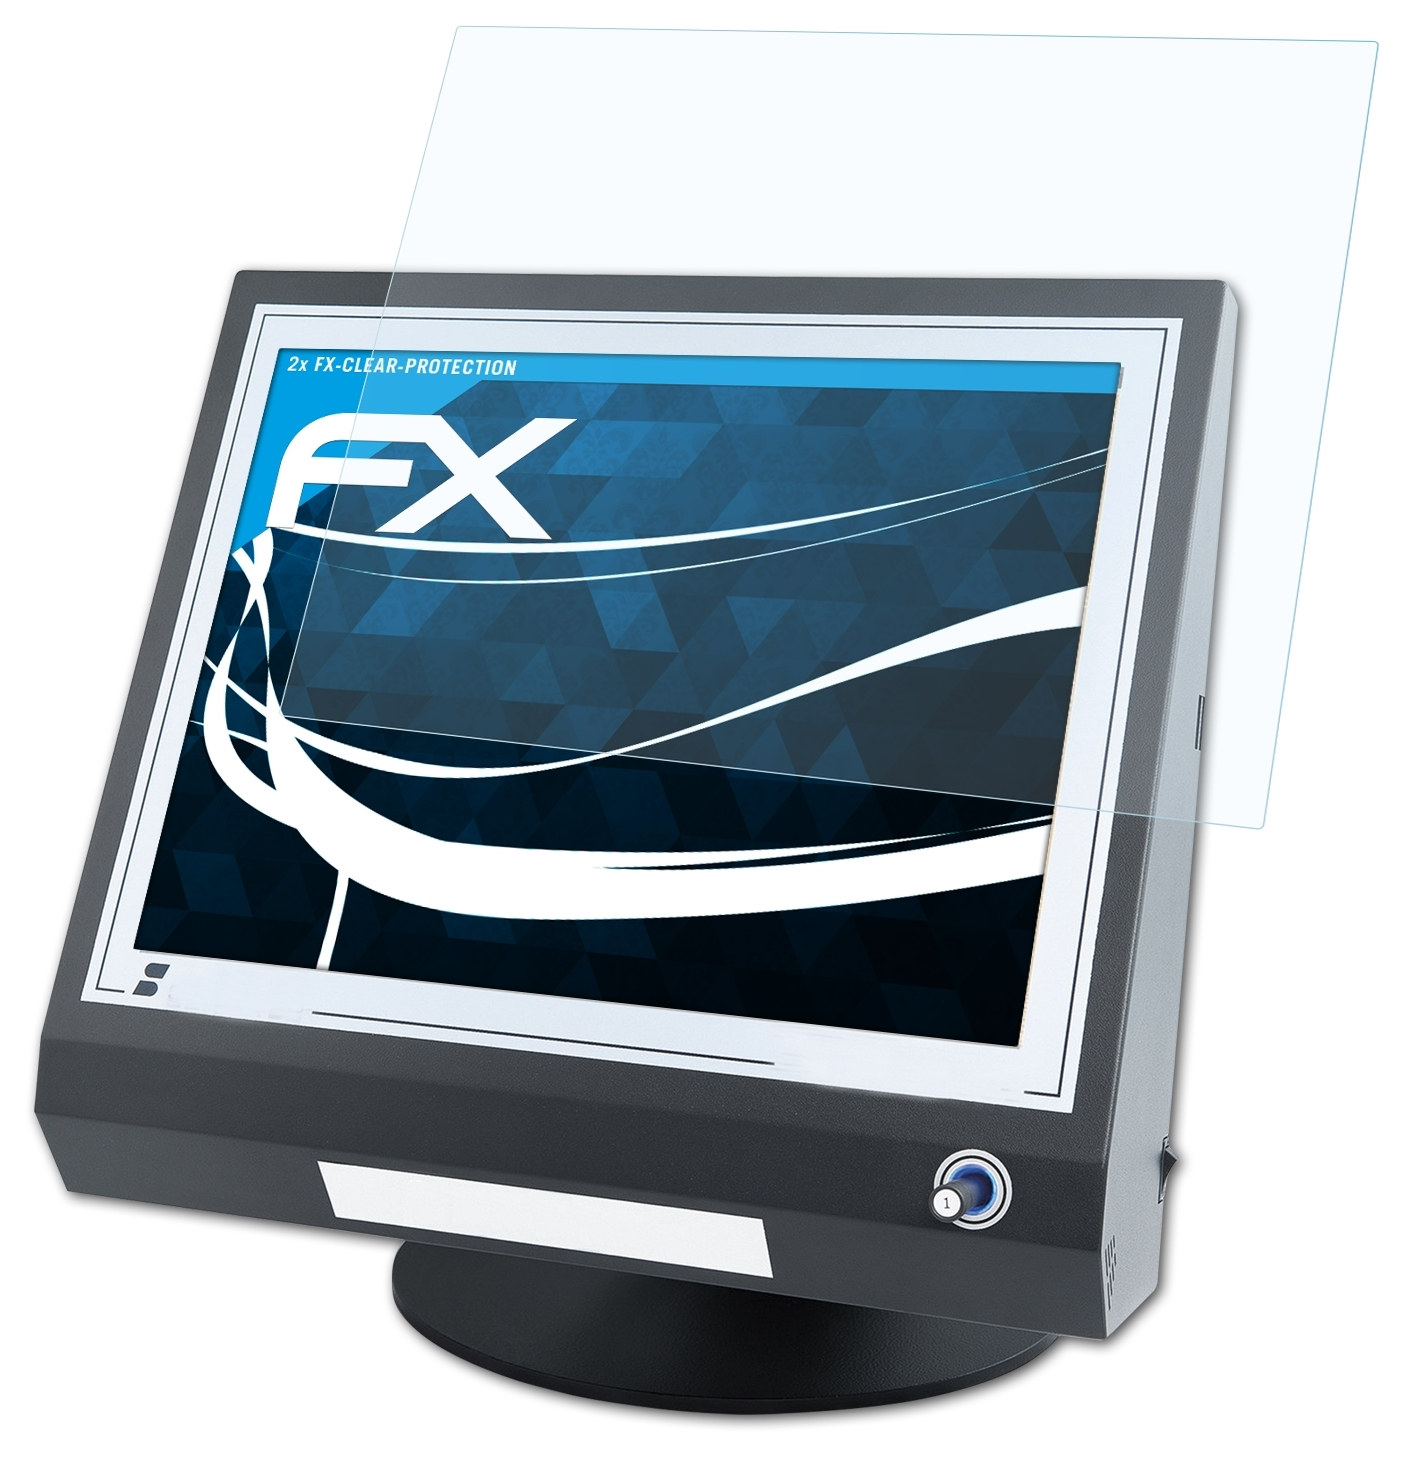 ATFOLIX 2x Schultes S-700 FX-Clear Displayschutz(für Modular)